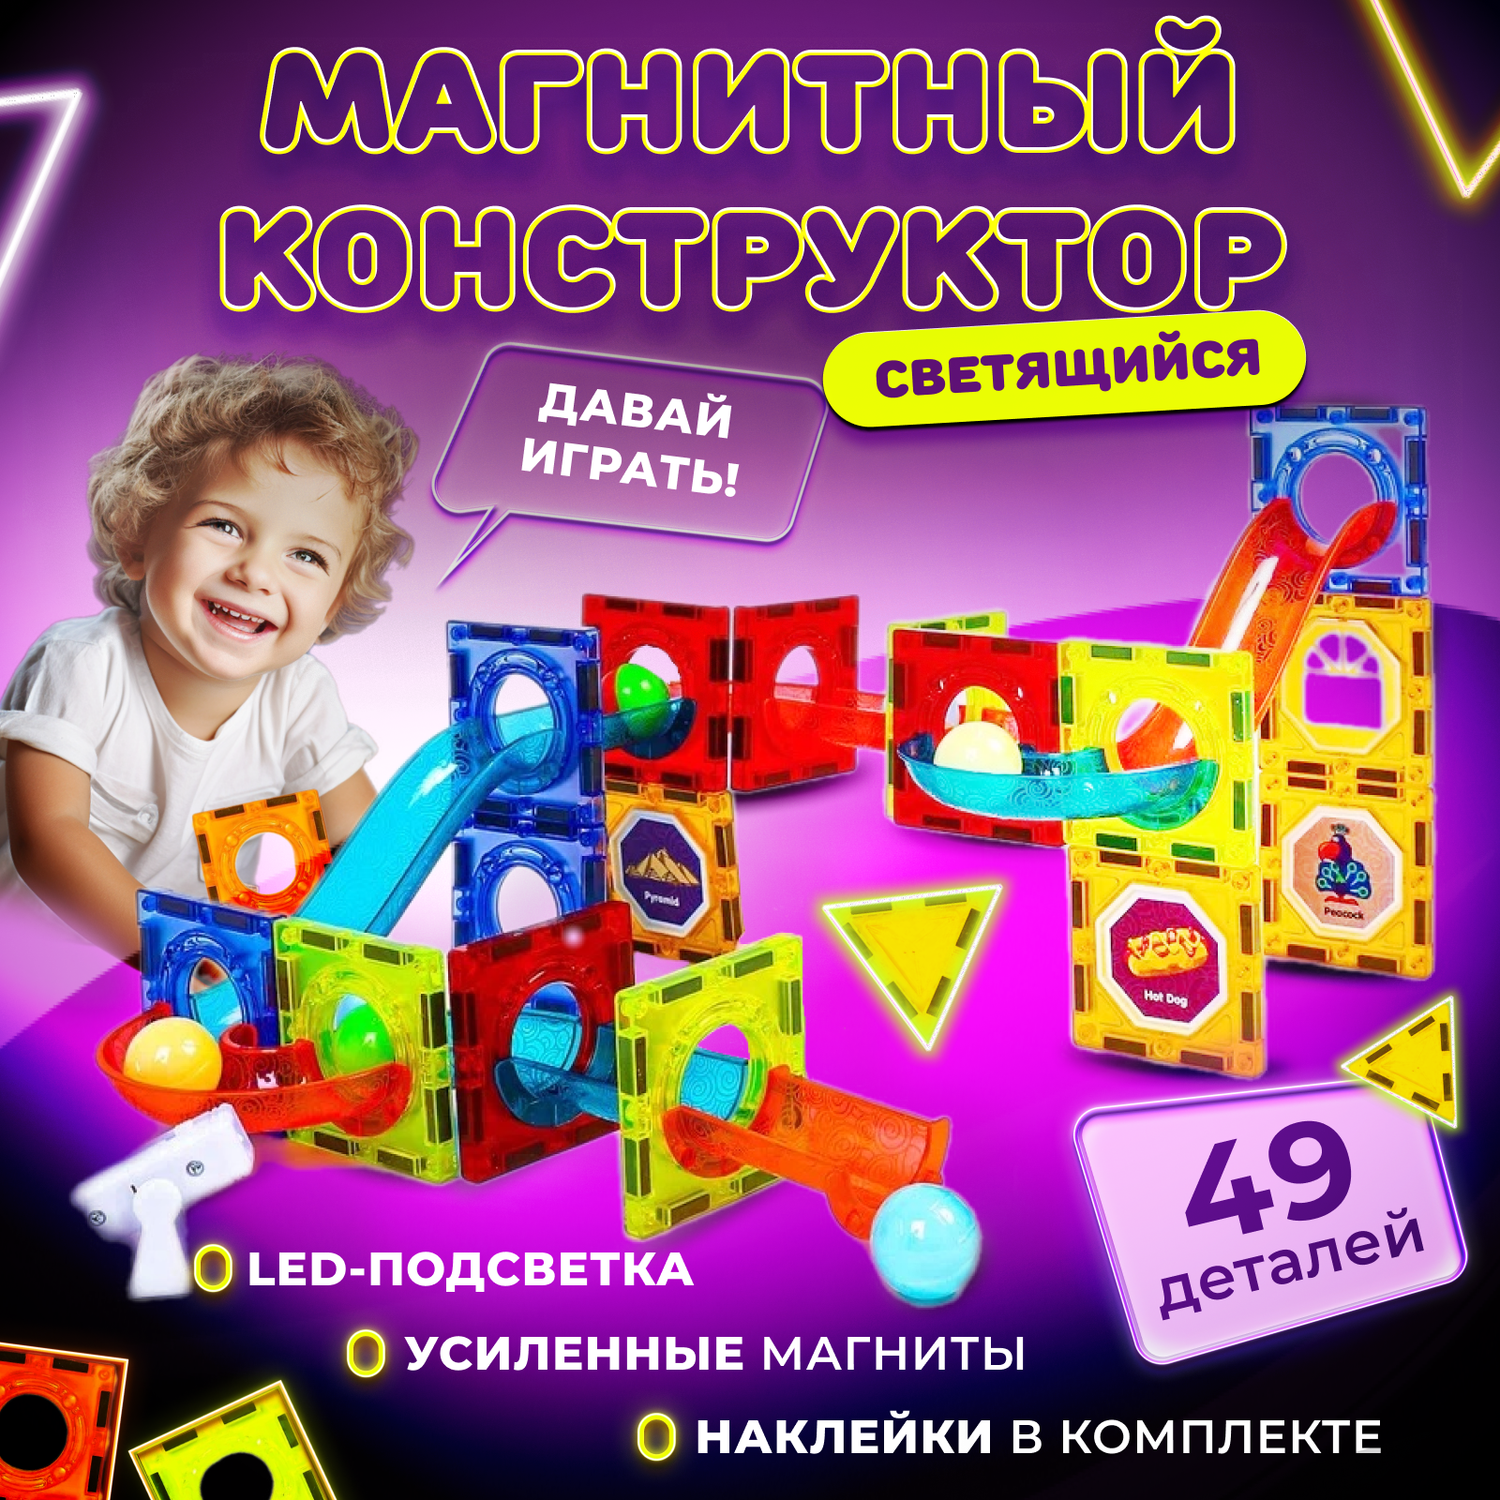 Магнитный конструктор Play Cool детский светящийся развивающий 49 деталей - фото 1